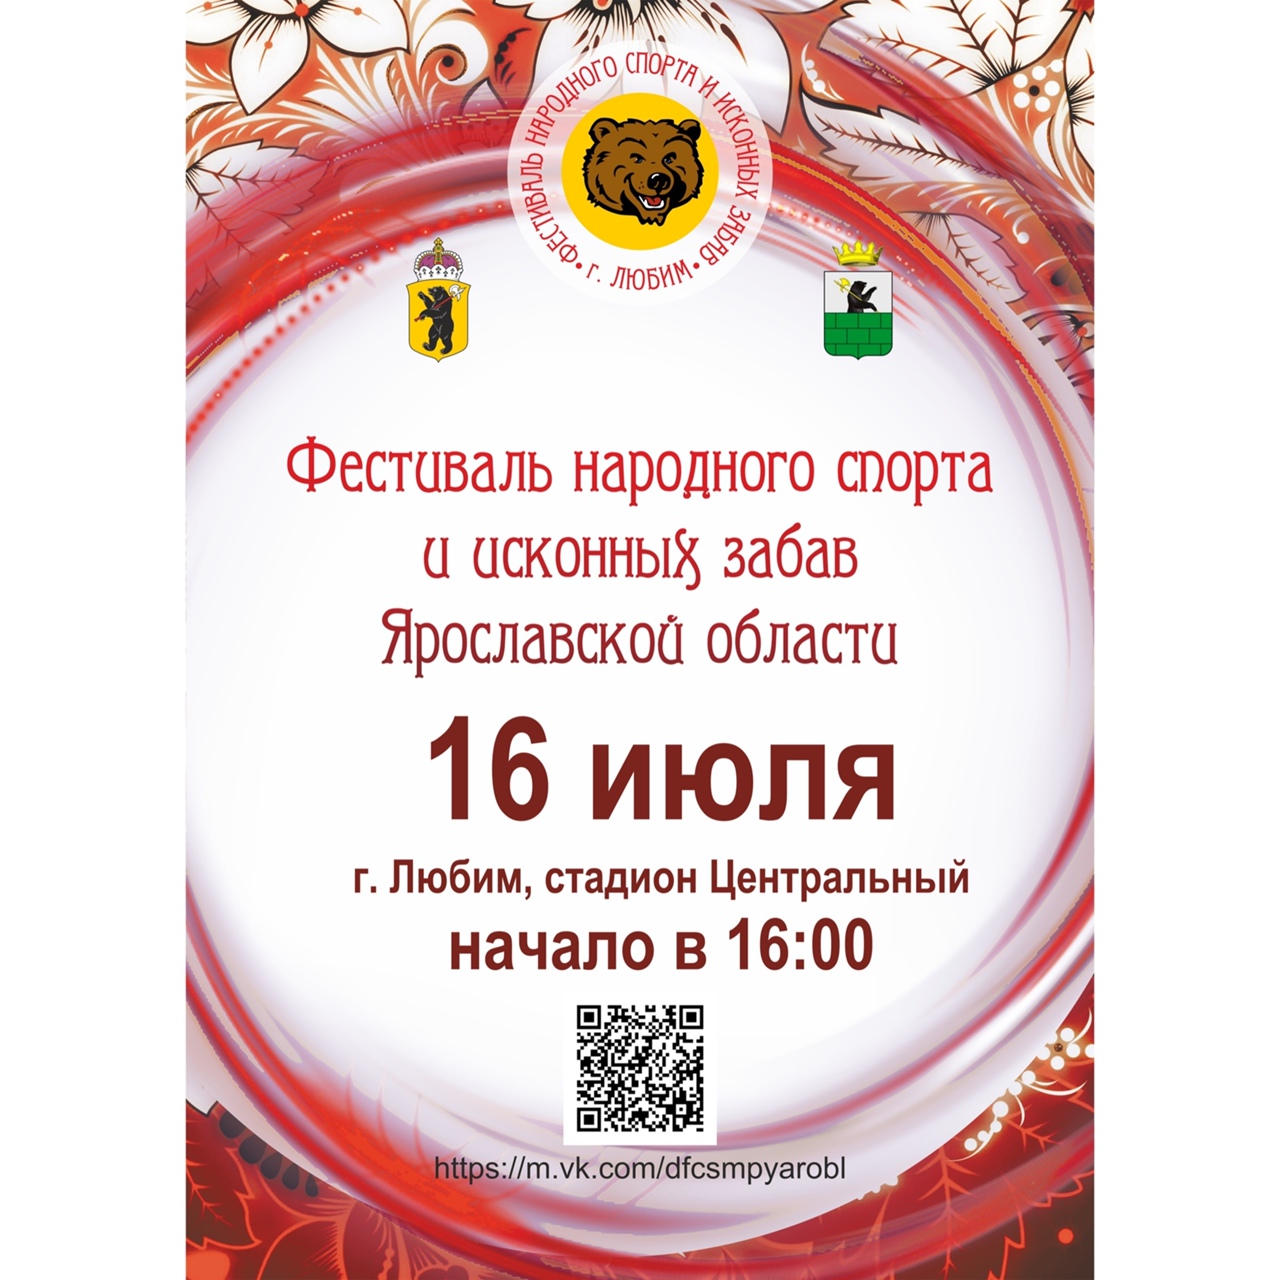 В Ярославской области состоится фестиваль народного спорта и исконных забав: программа мероприятий